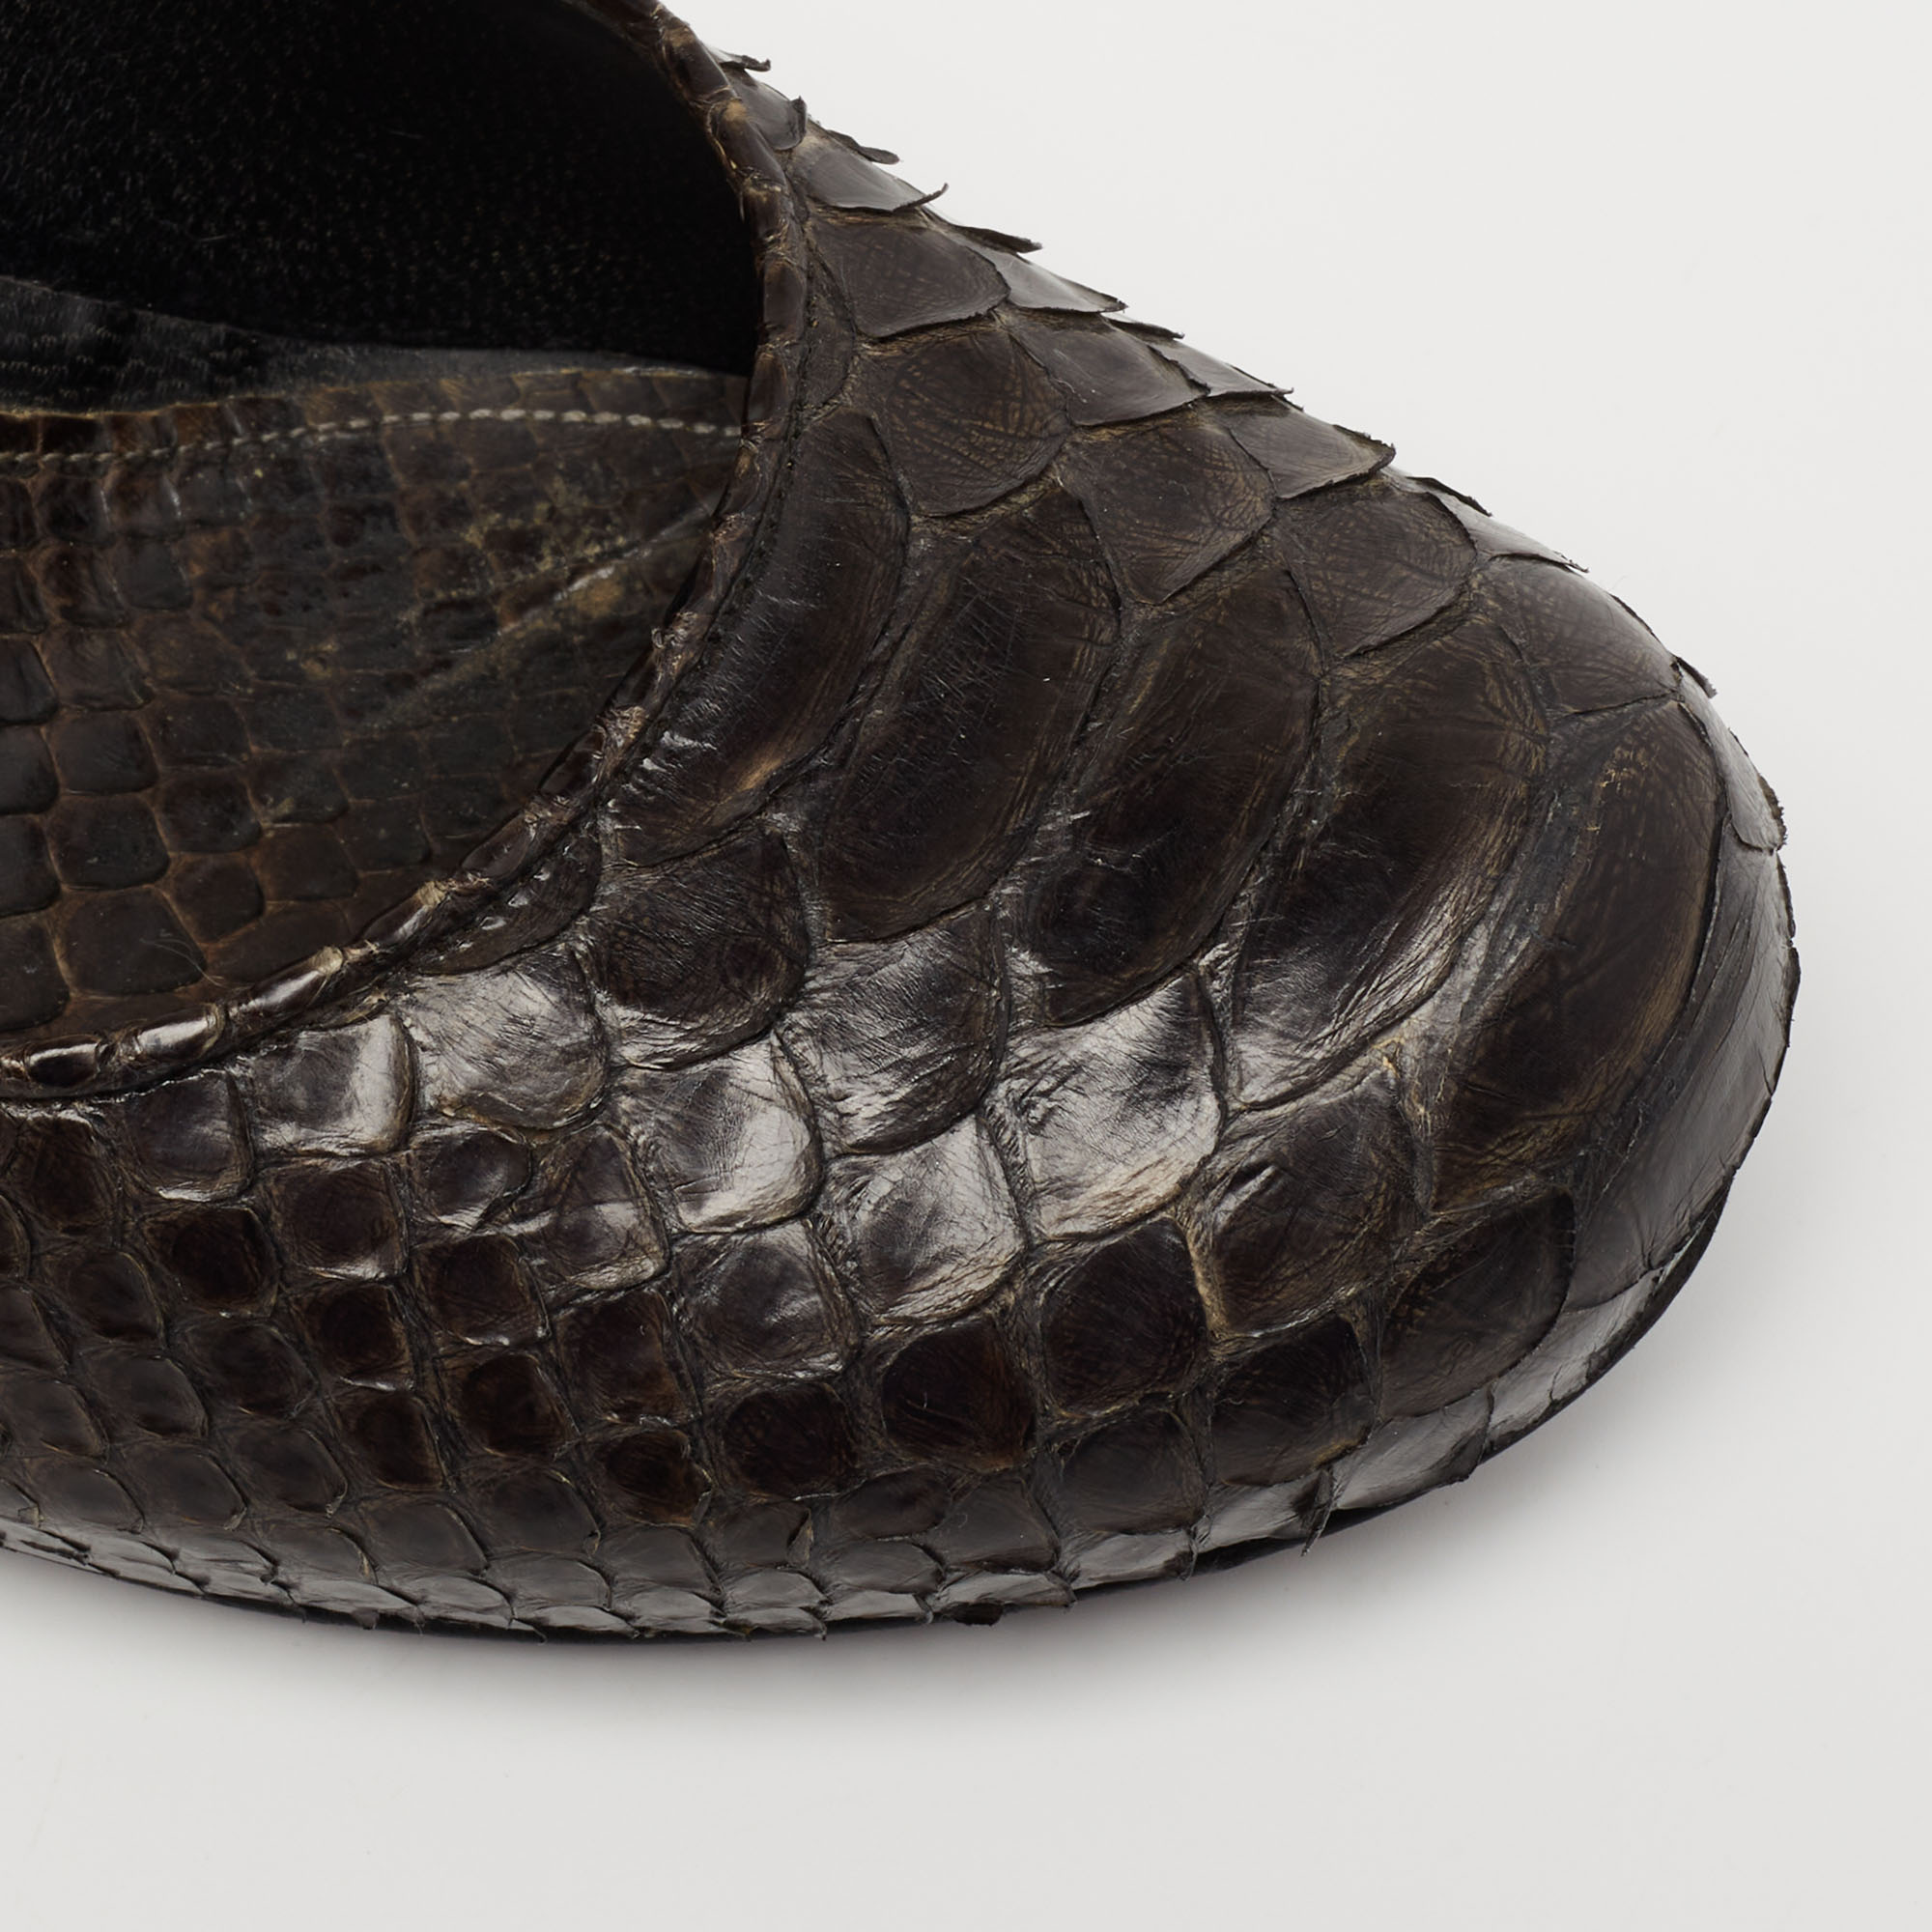 Alexander McQueen Dark Green Python Leather Round Toe Pumps Size 37.5